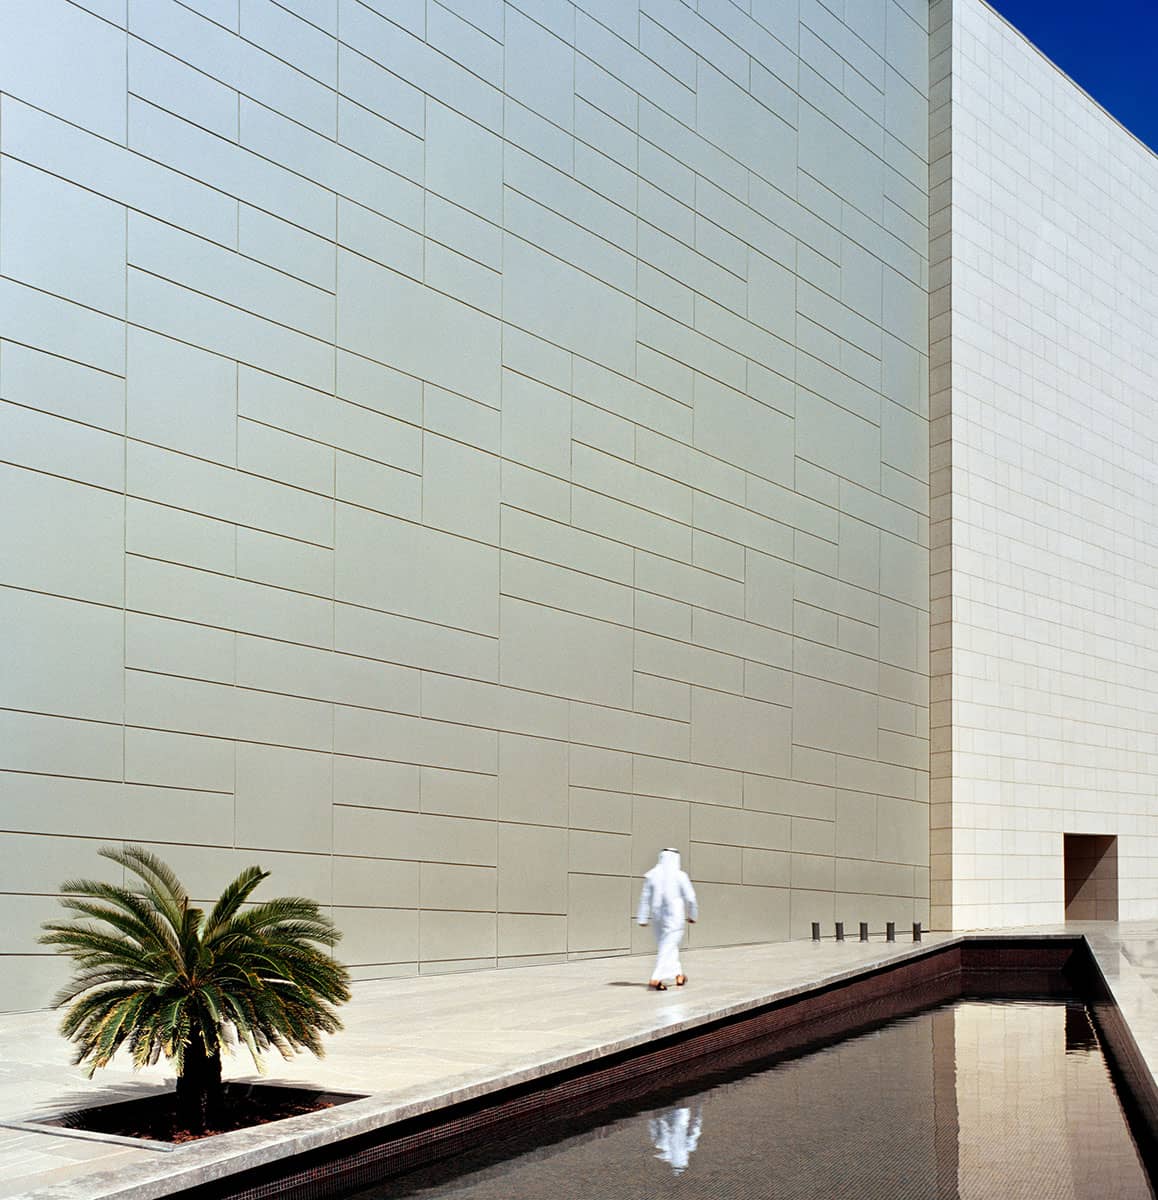 Architecture Photography Kuwait: A minimalist interpretation of Avenues Mall Façade, Kuwait. 